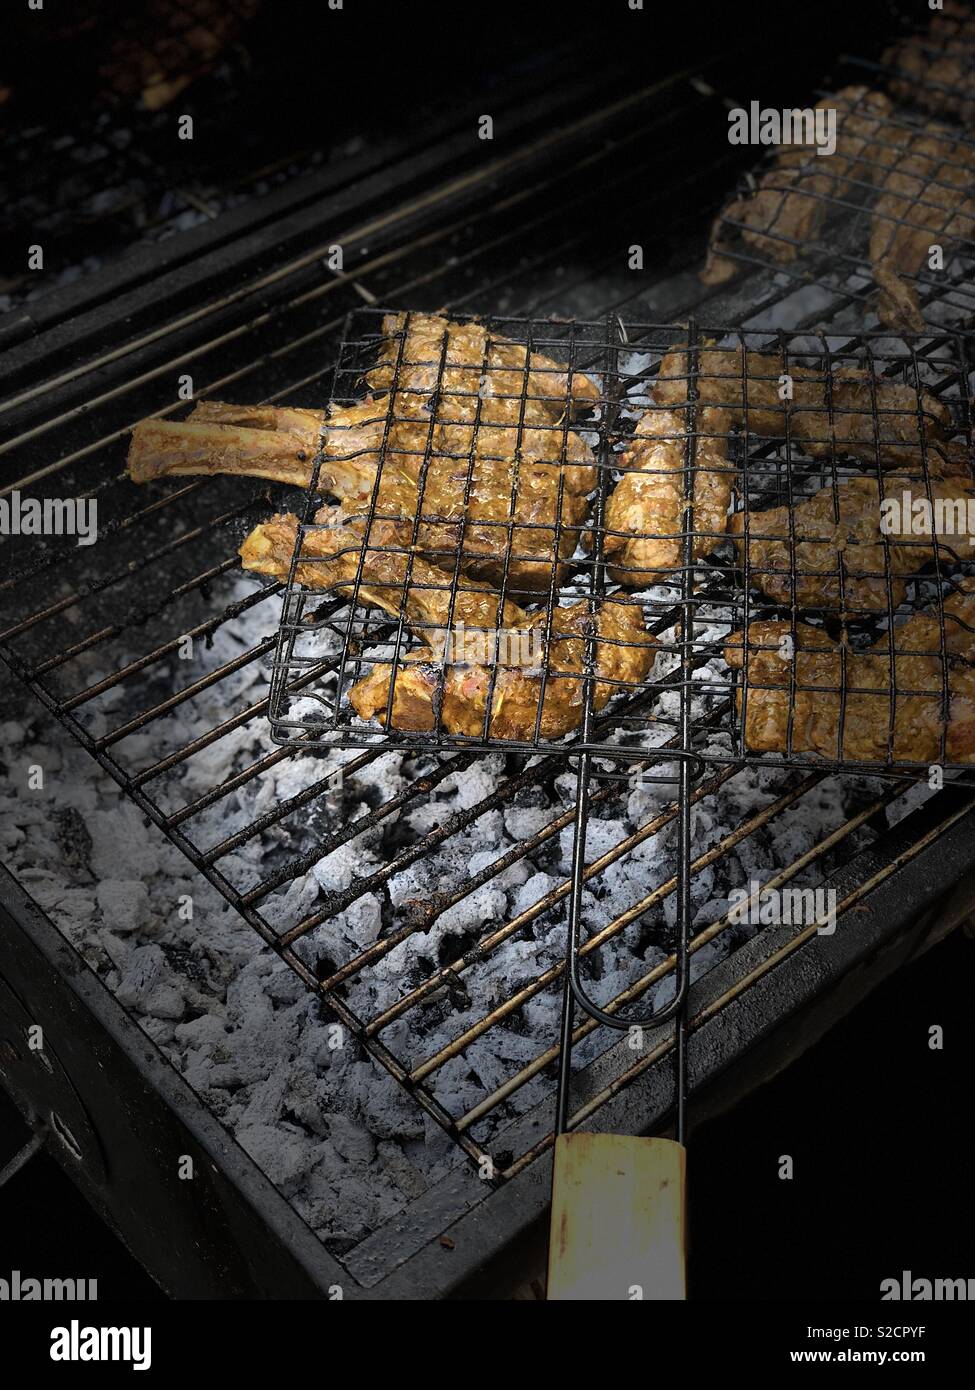 Les côtelettes d'agneau mariné aux épices sur un barbecue au charbon de bois chaud Banque D'Images